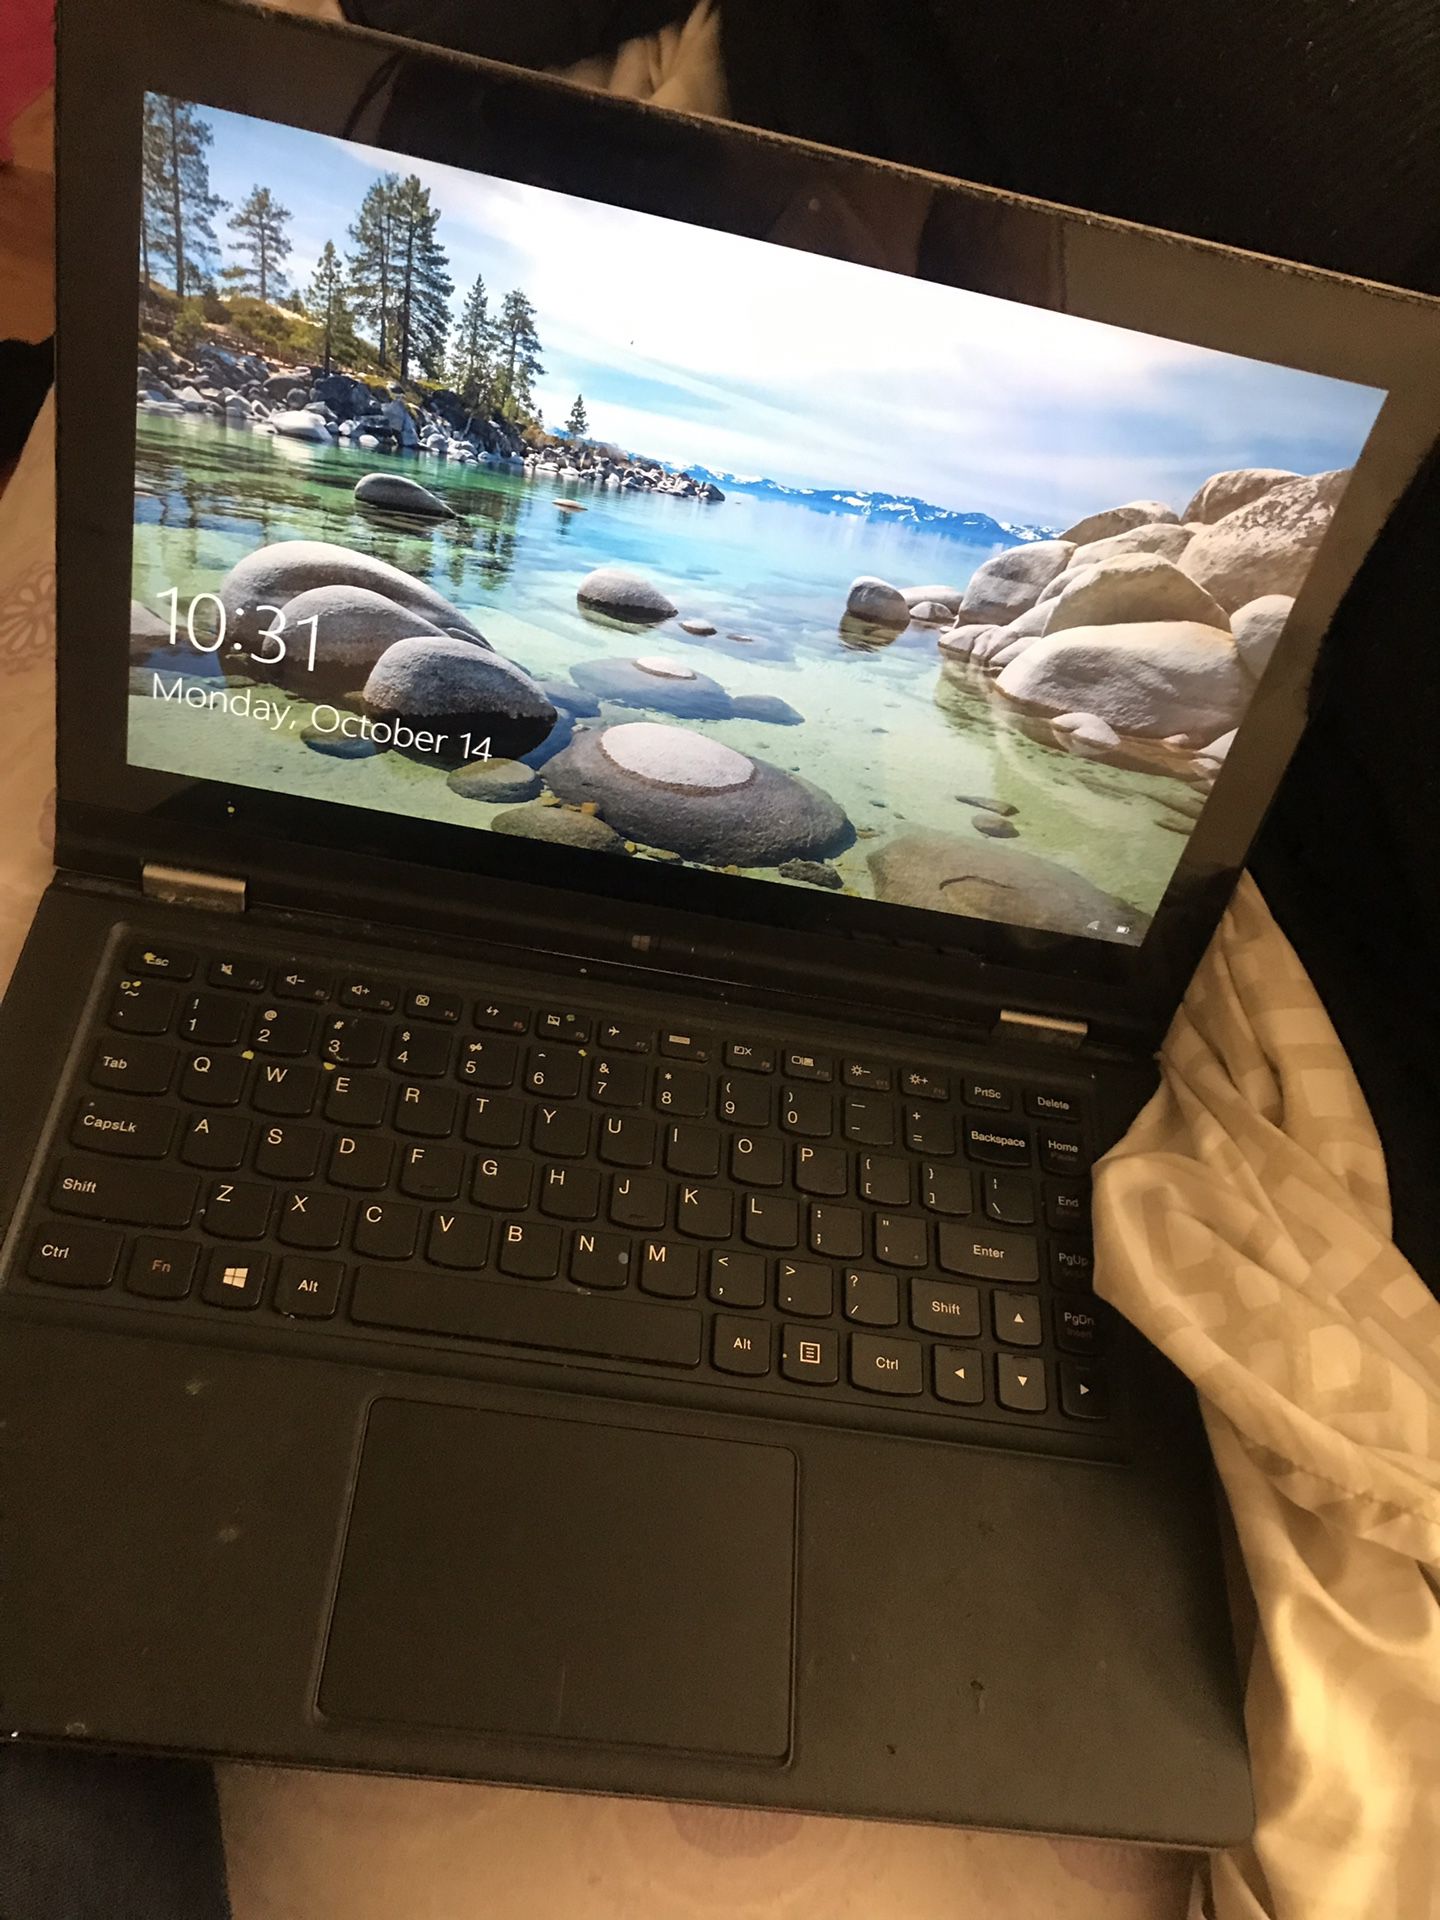 Lenovo touchscreen laptop